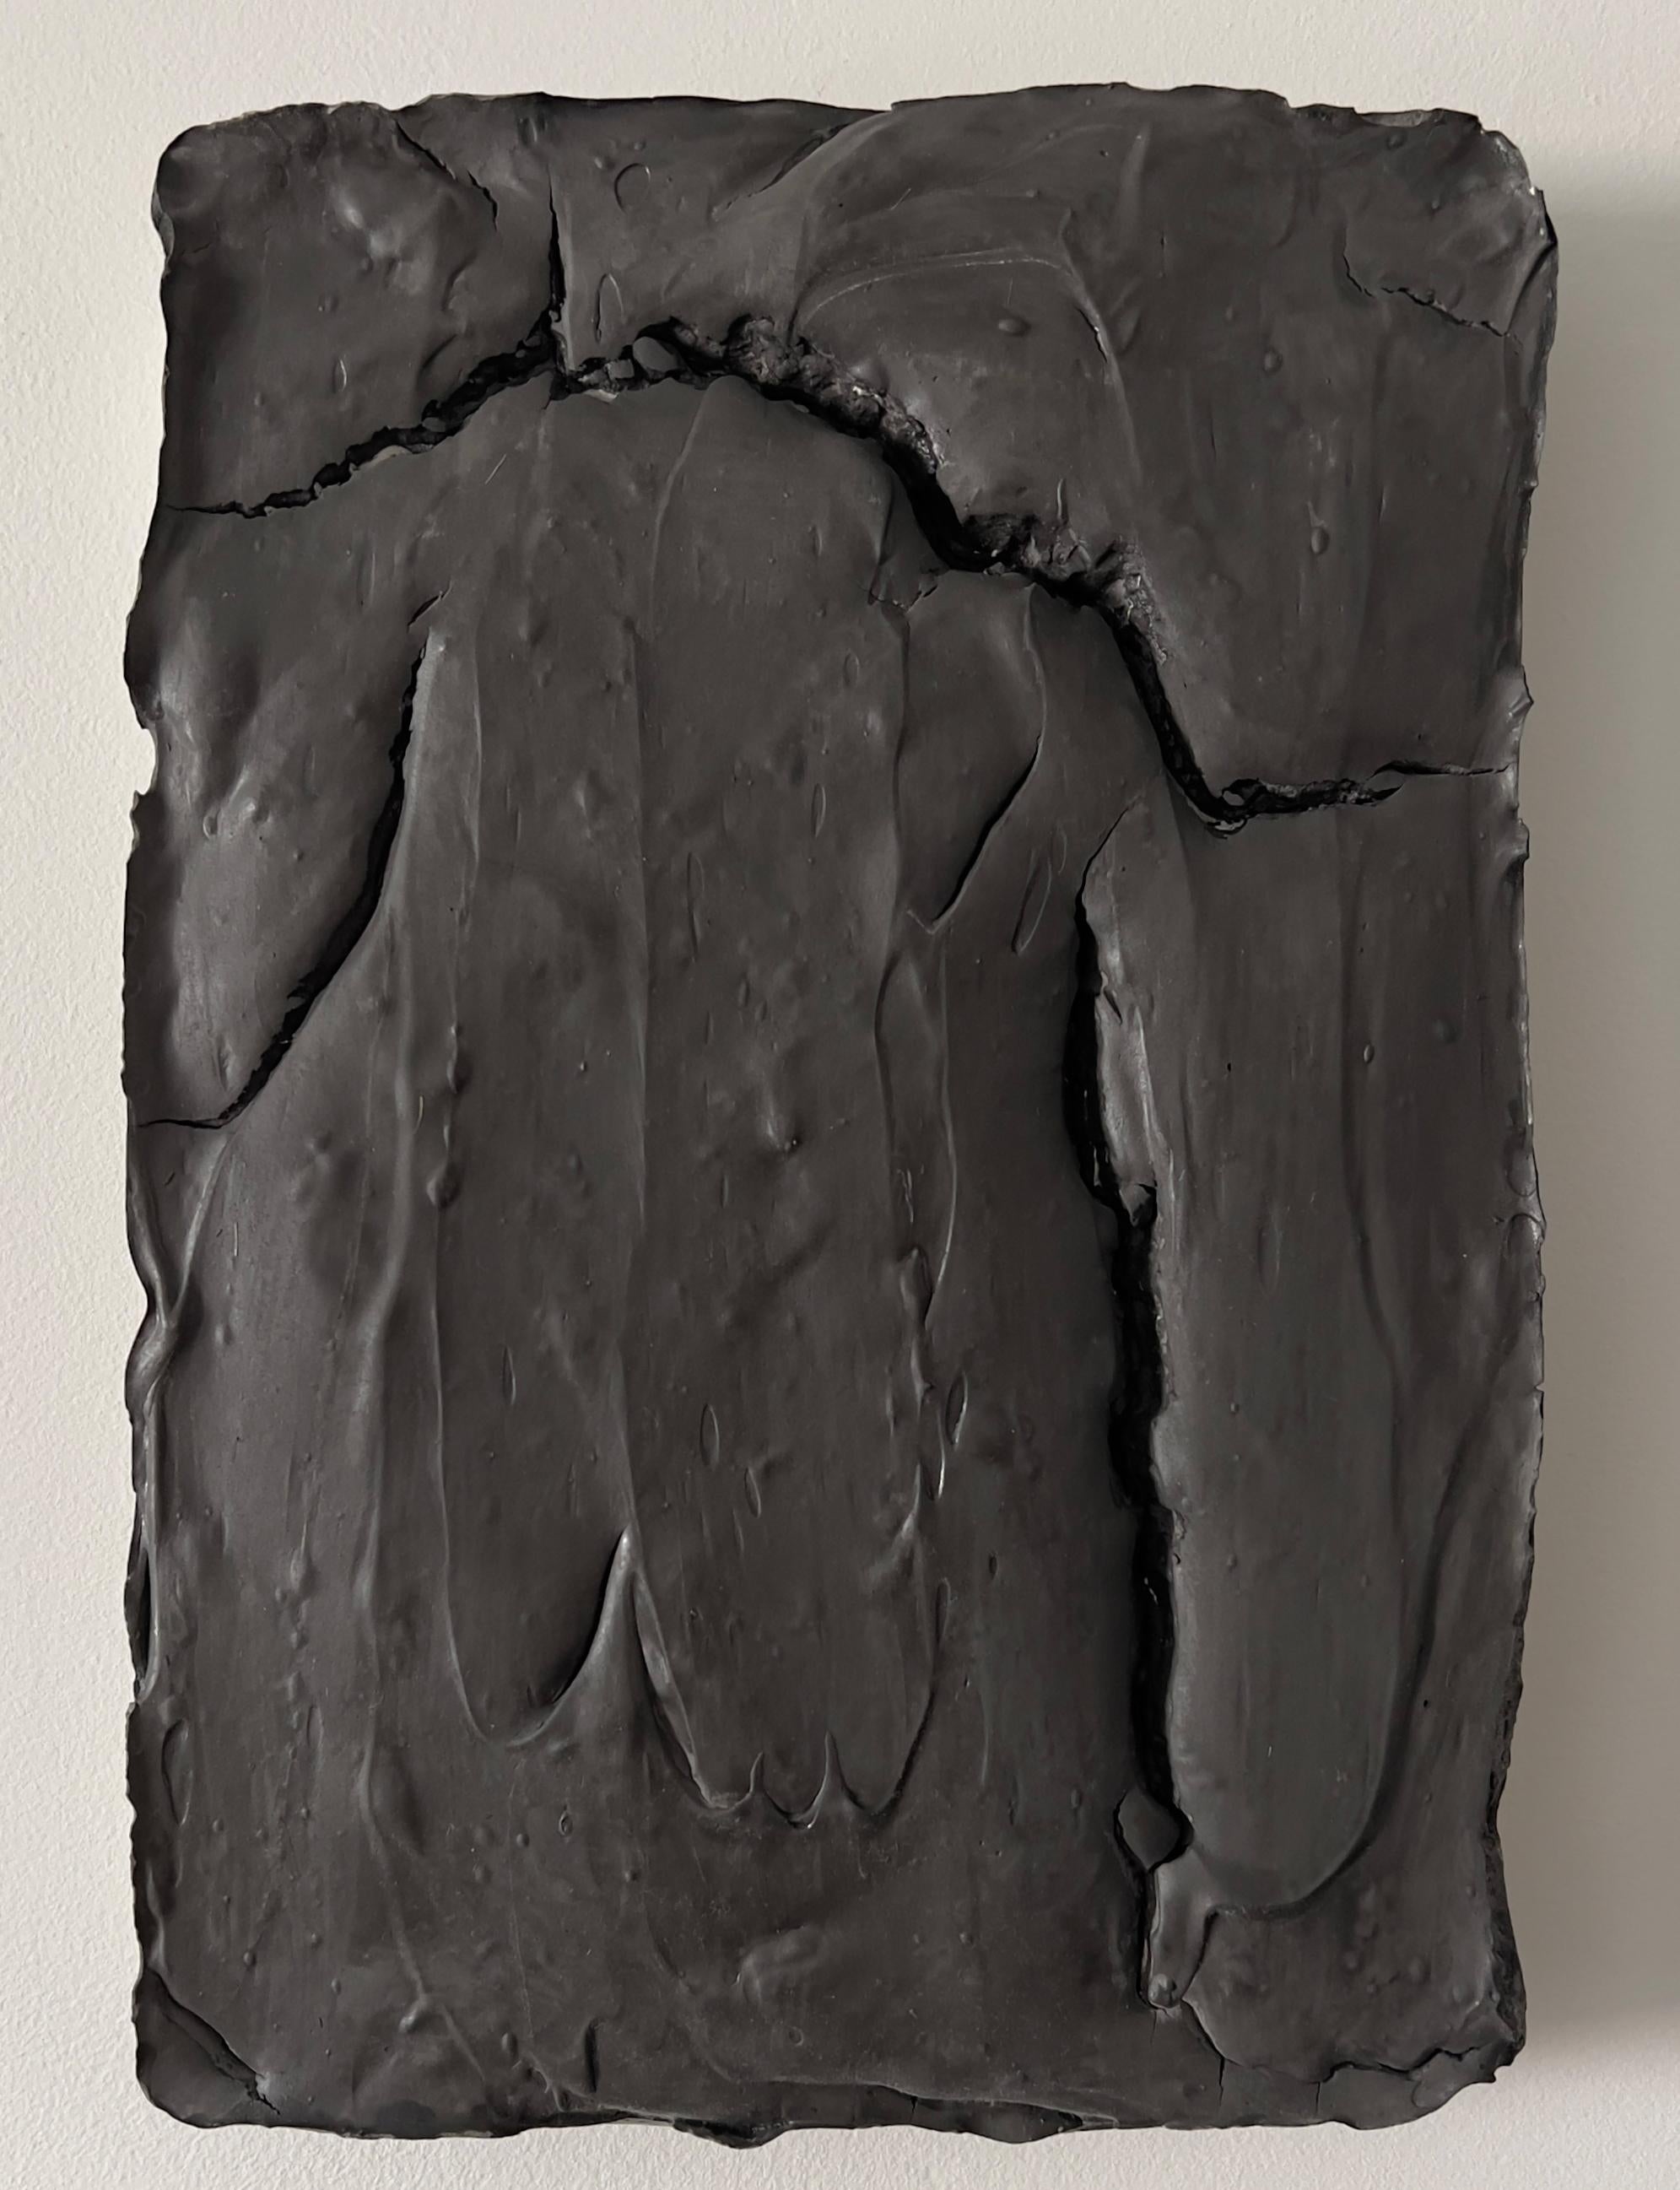 Ragisména series Black, Abstract Sculpture  - Mixed Media Art by Rodrigo Zuliani Hauck Zampol